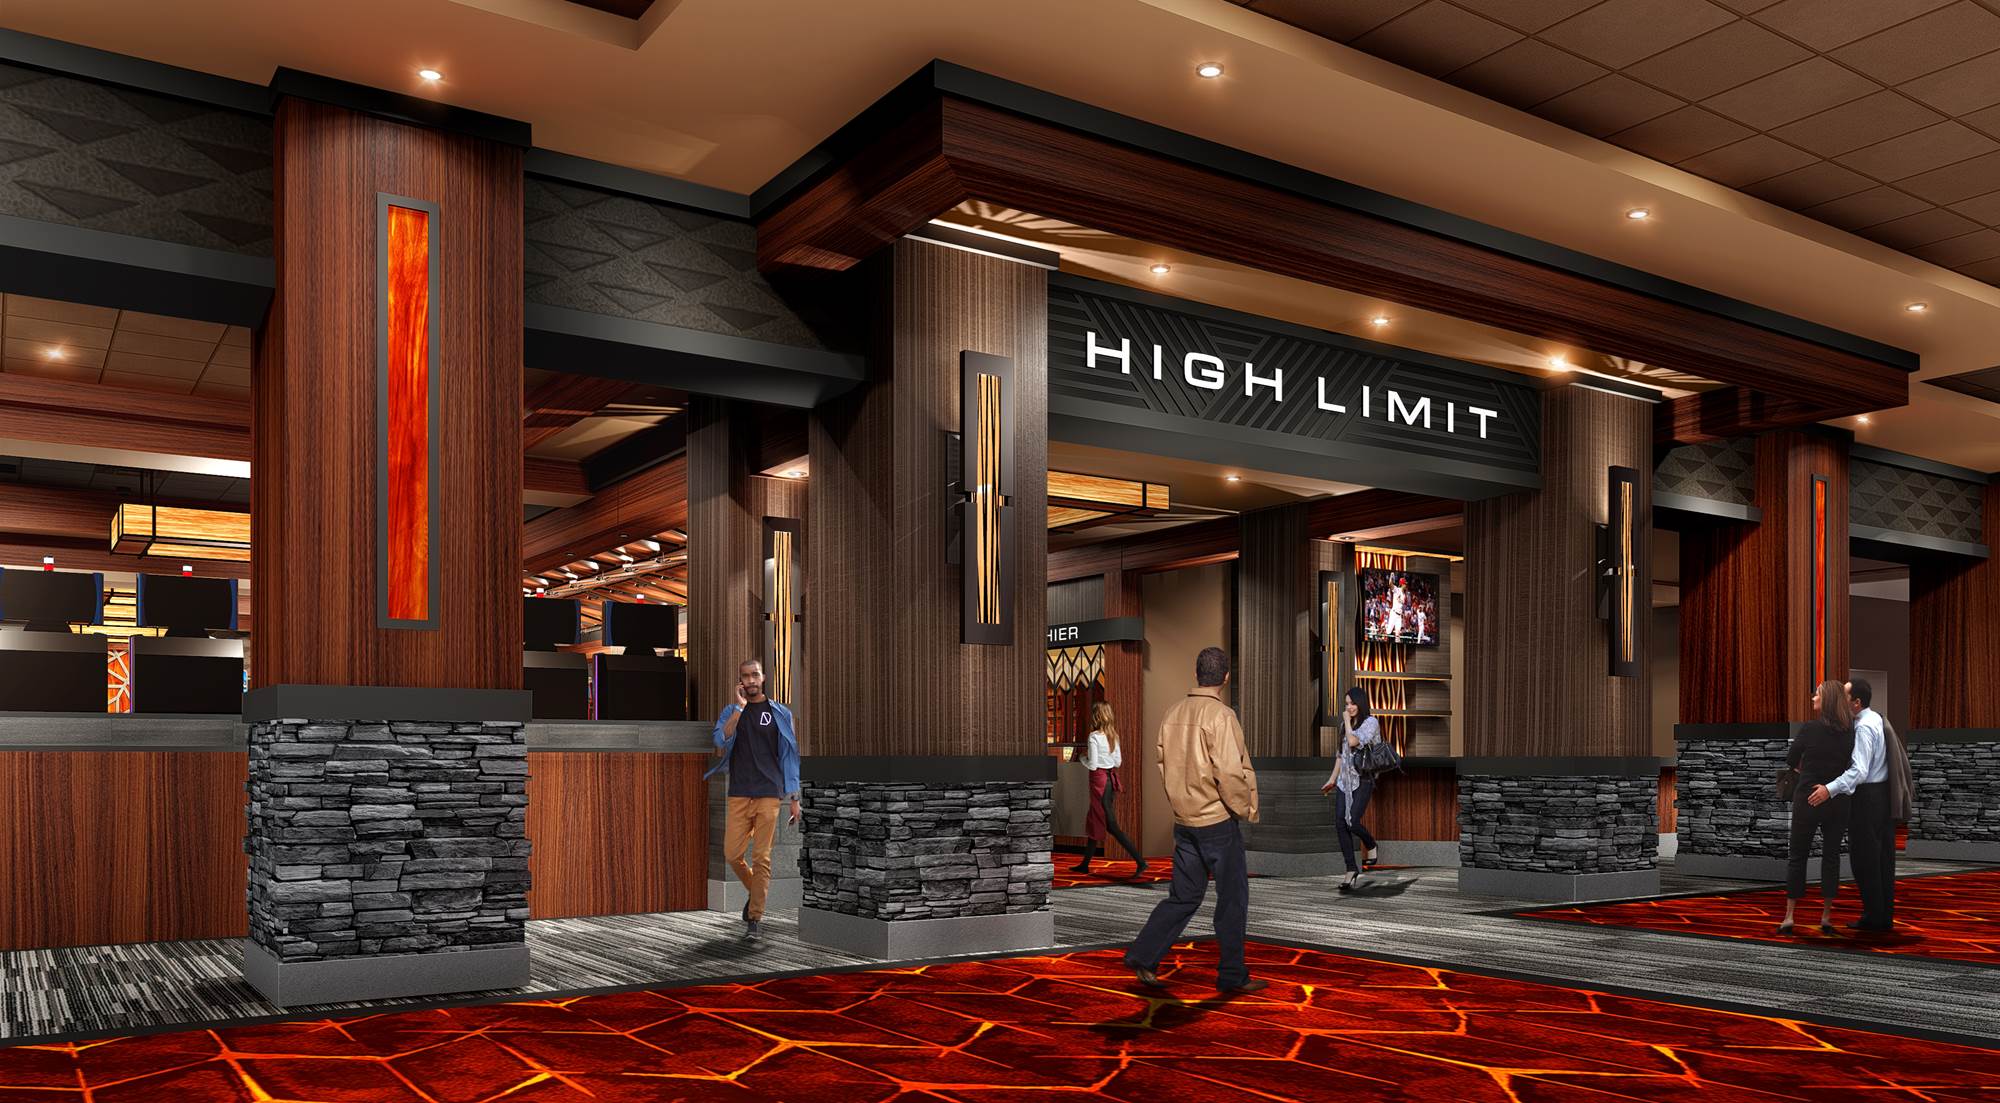 soaring eagle casino resort lansing michigan